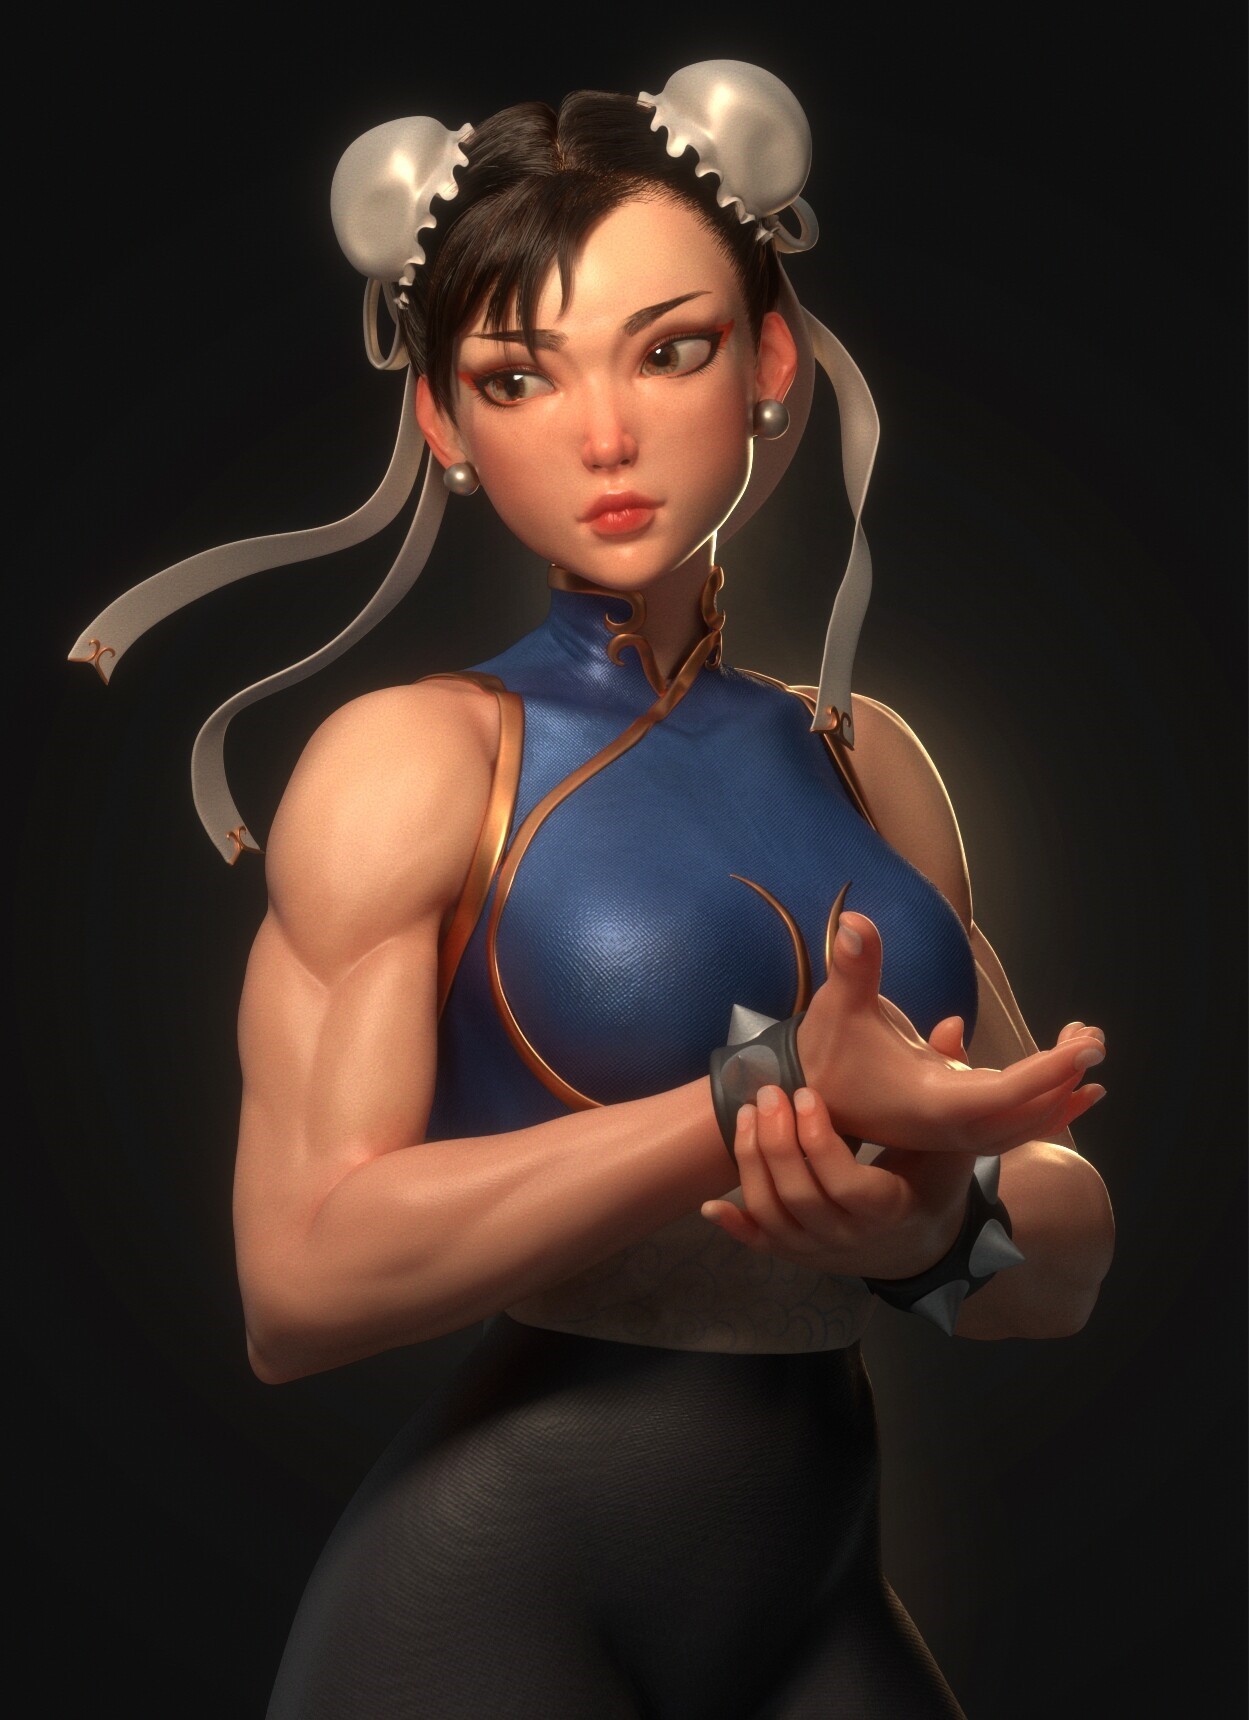 Video game girls video games standing digital art muscular video game warriors chun li women muscles street fighter video game art